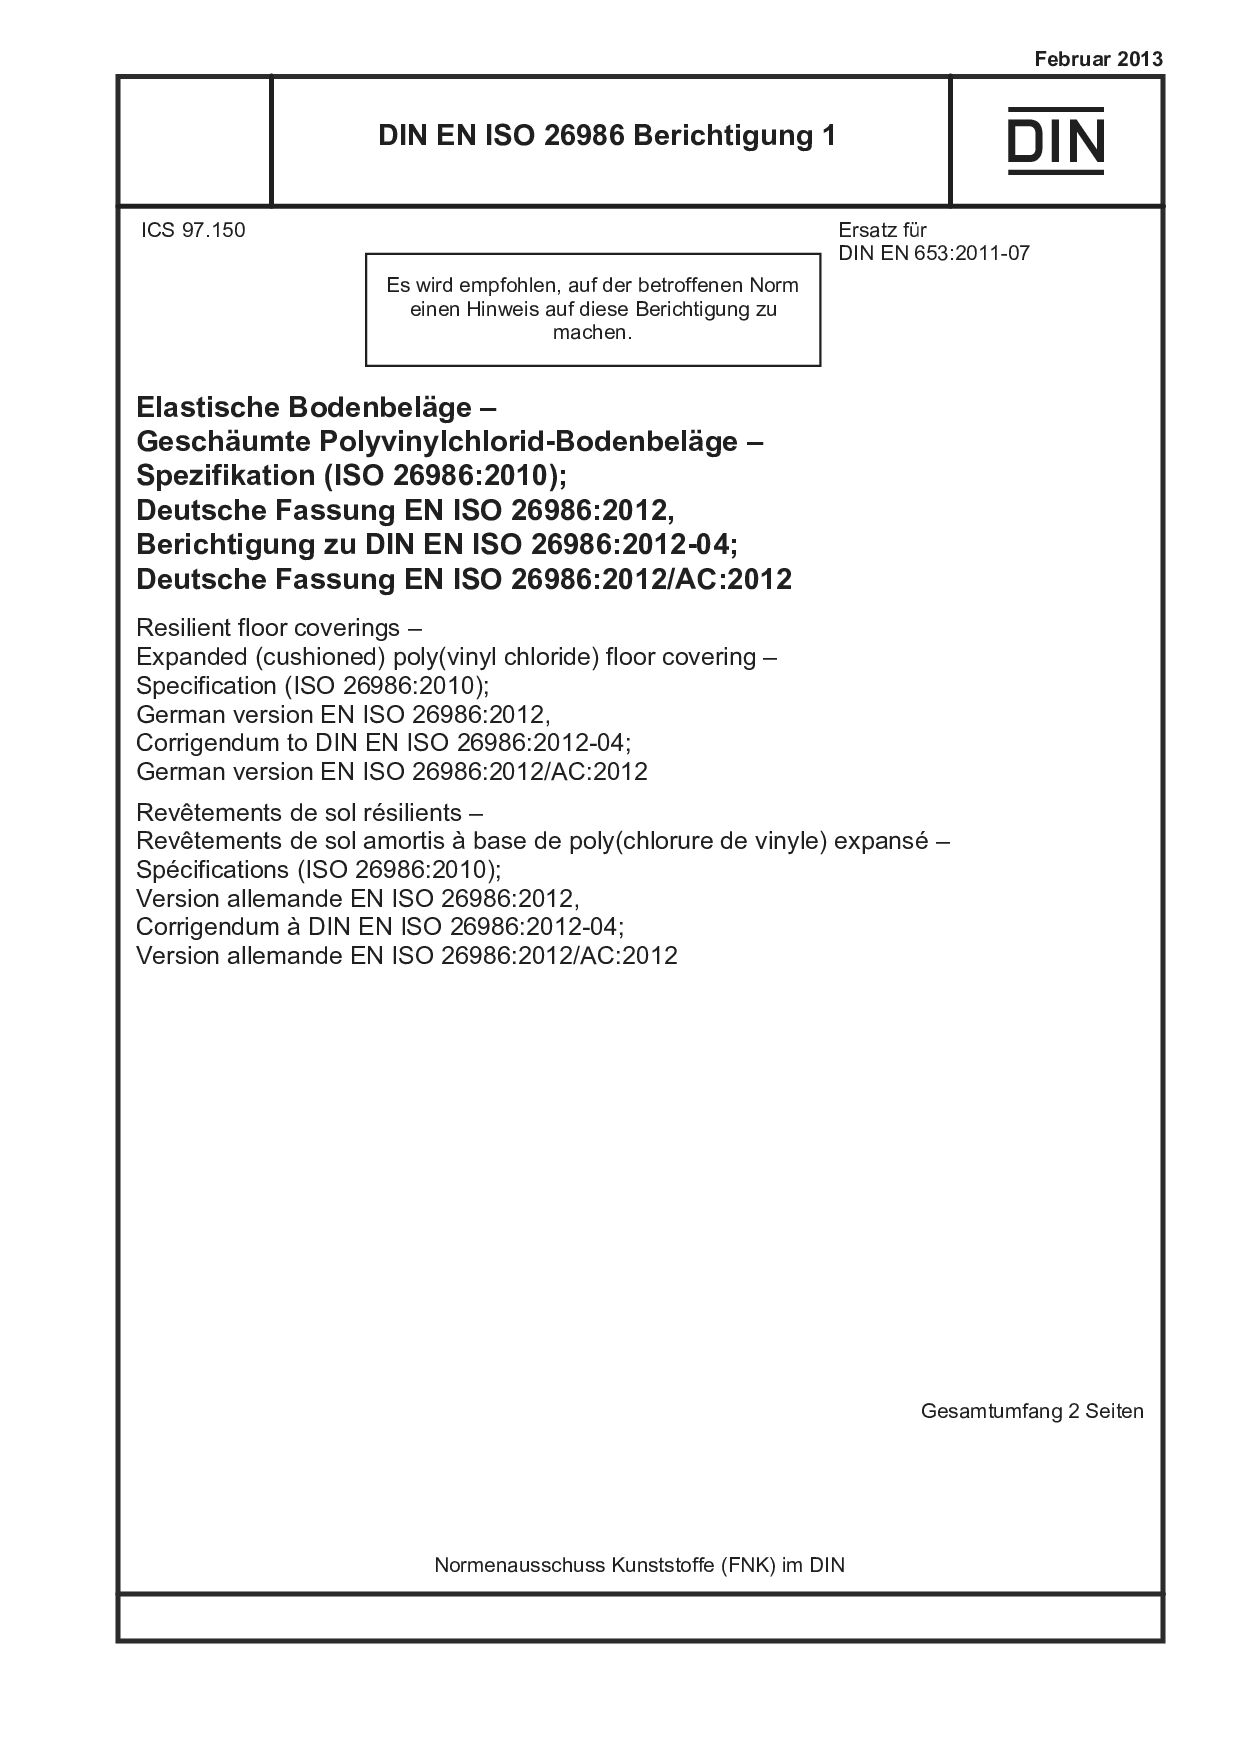 DIN EN ISO 26986 Berichtigung 1:2013封面图